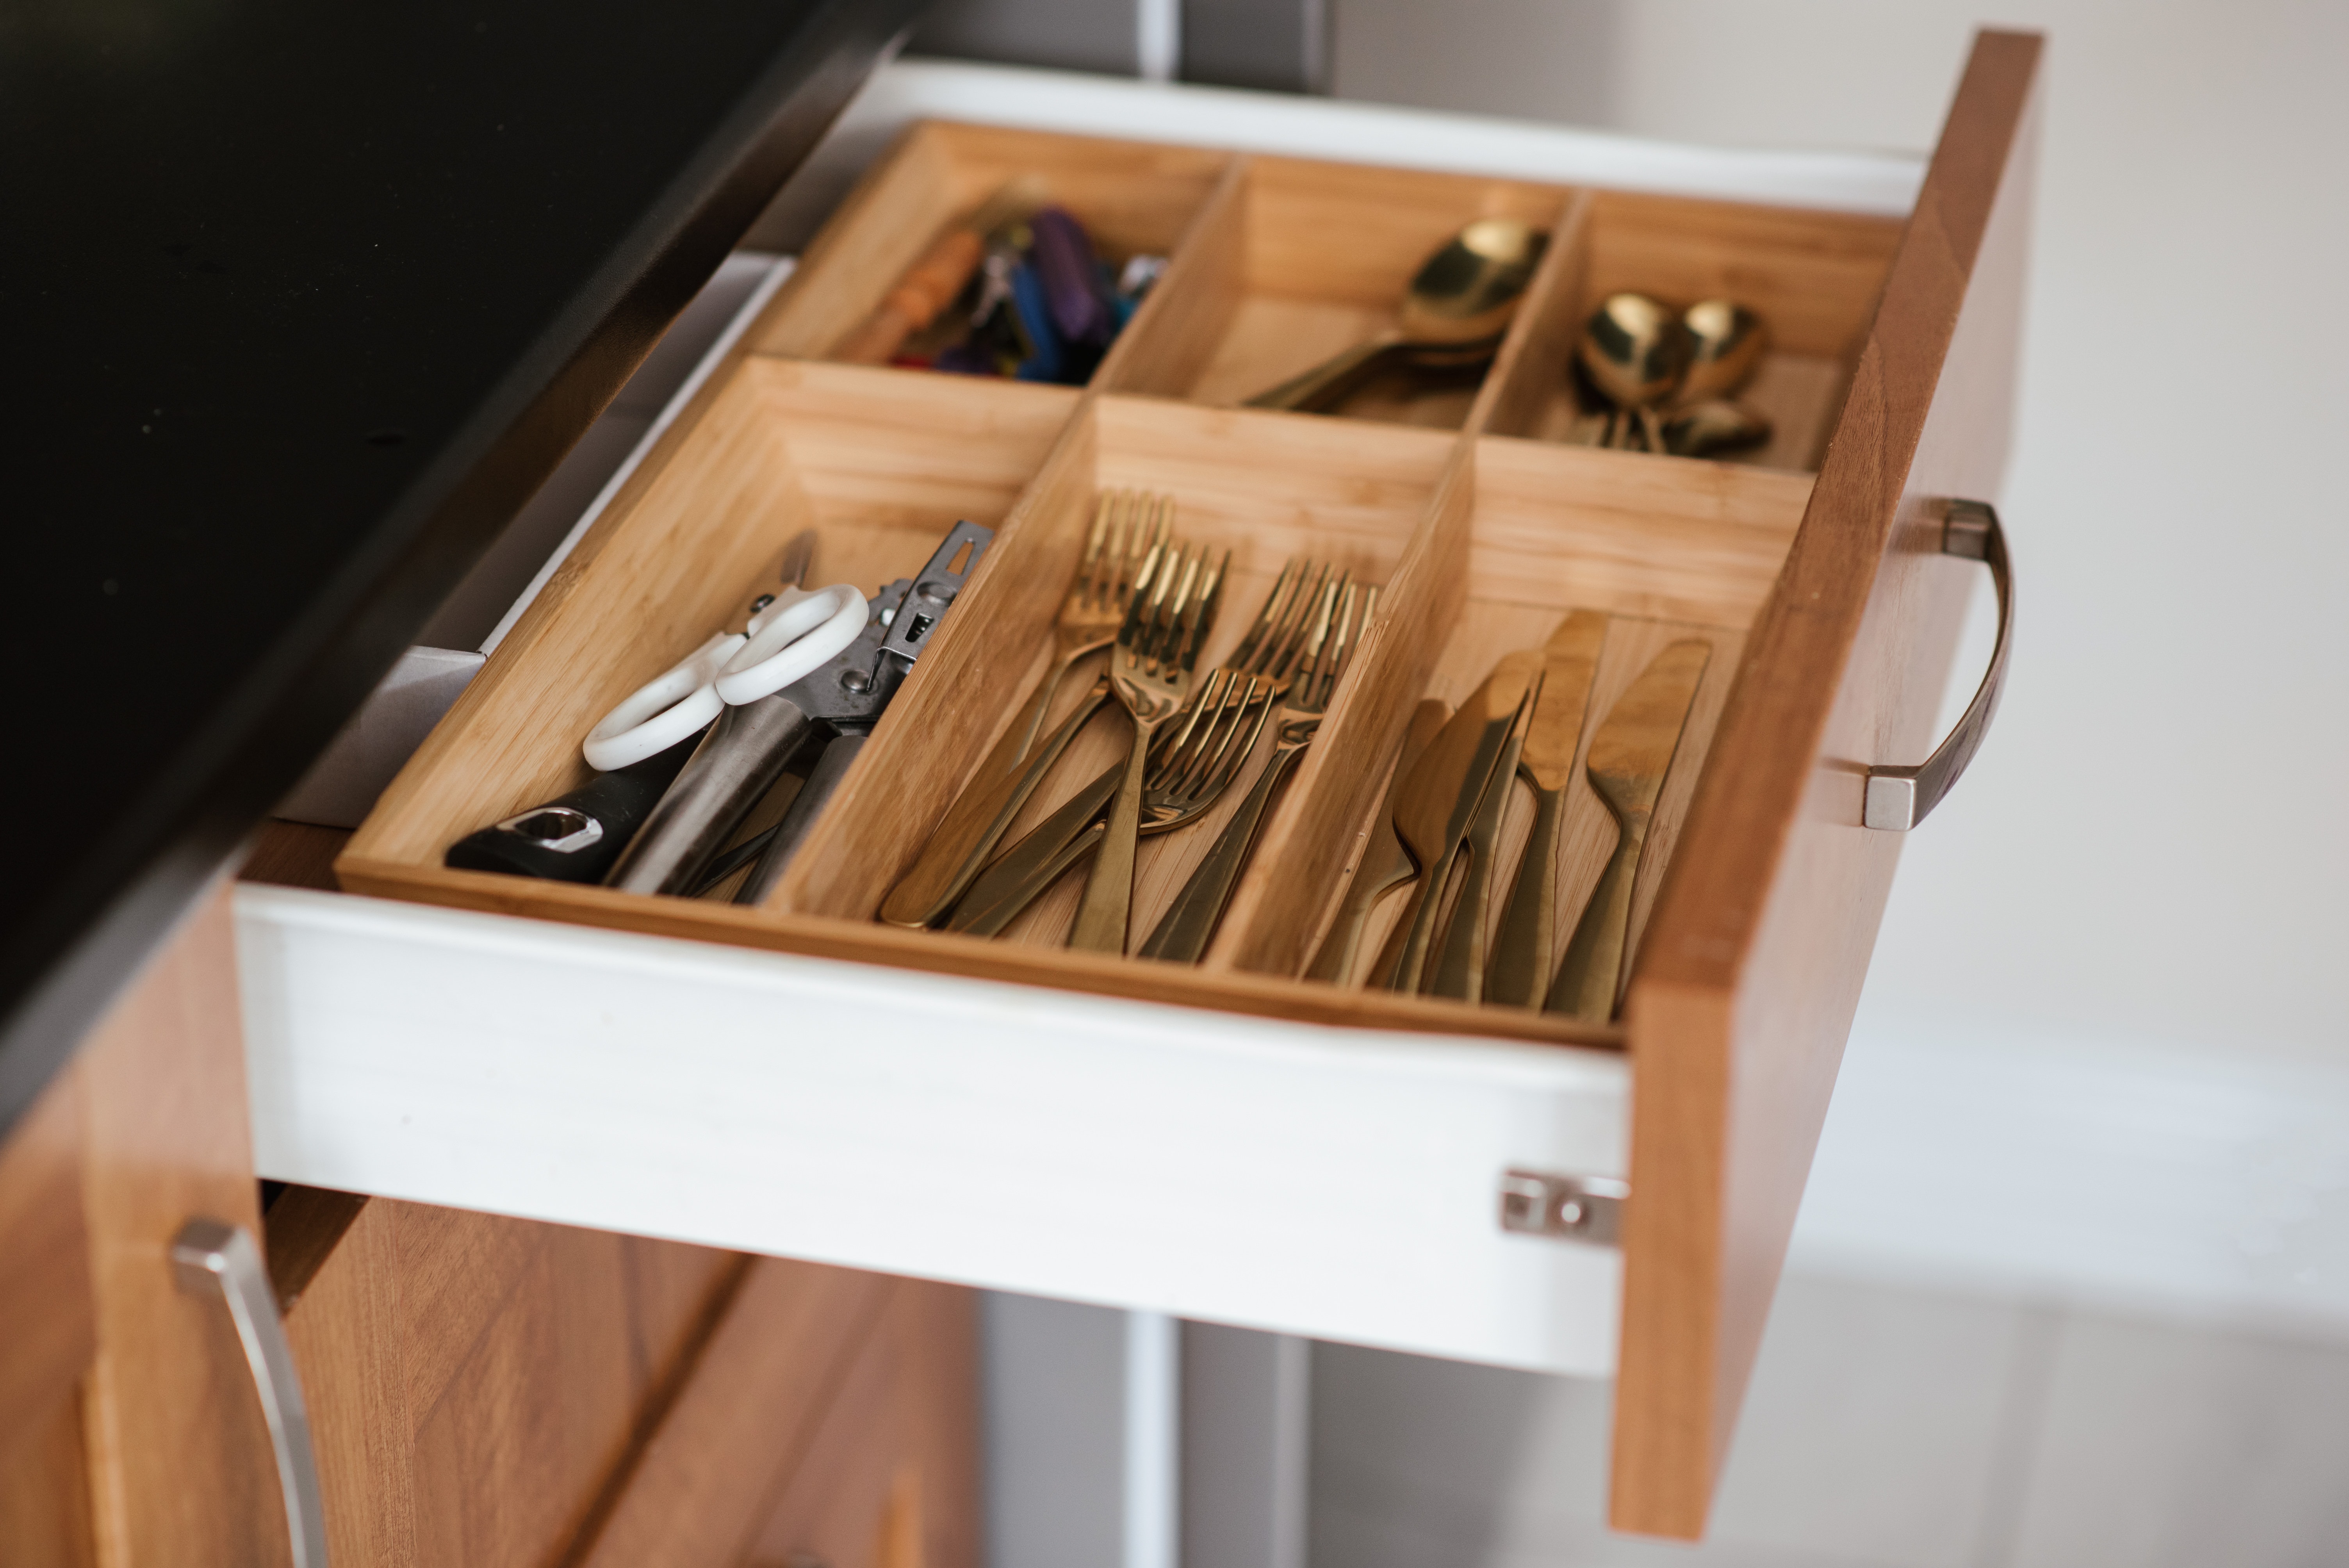 built-in knife drawer